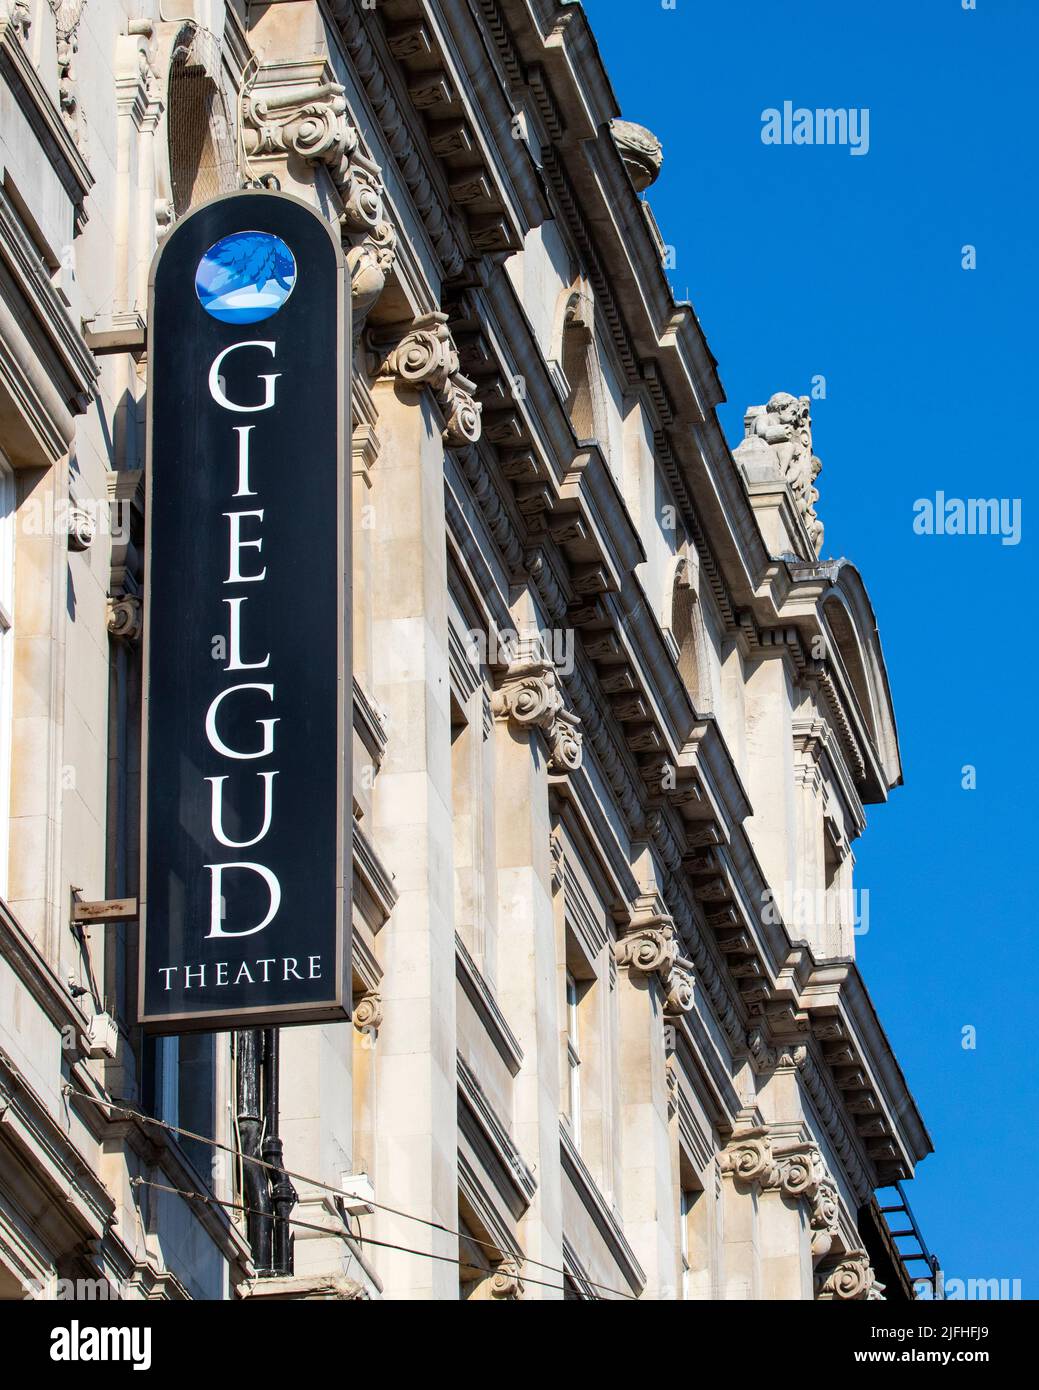 Londres, Royaume-Uni - 8 mars 2022 : le théâtre historique Gielgud, situé sur l'avenue Shaftesbury à Londres, Royaume-Uni. Banque D'Images